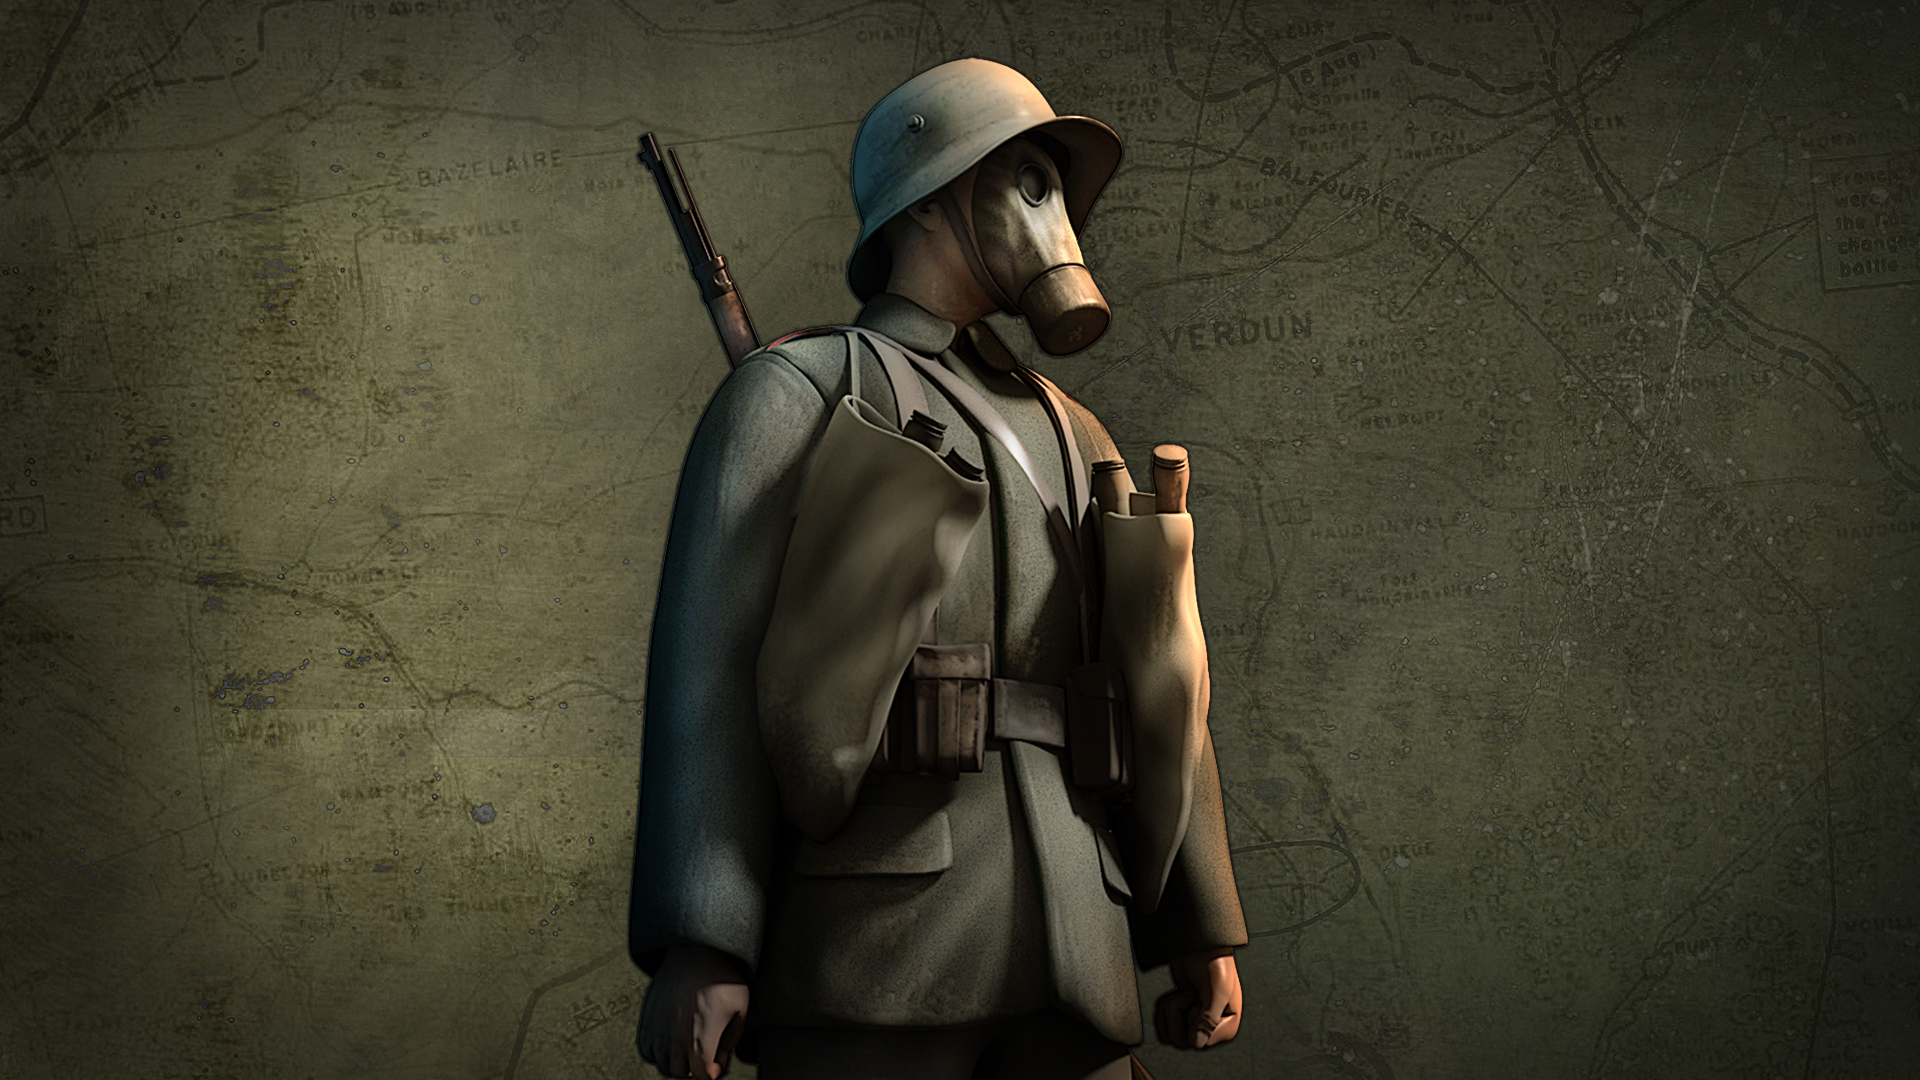 Video Game Art War Verdun Minimalism Simple Background Hat Soldier Face Mask Gun Uniform Looking Awa 1920x1080